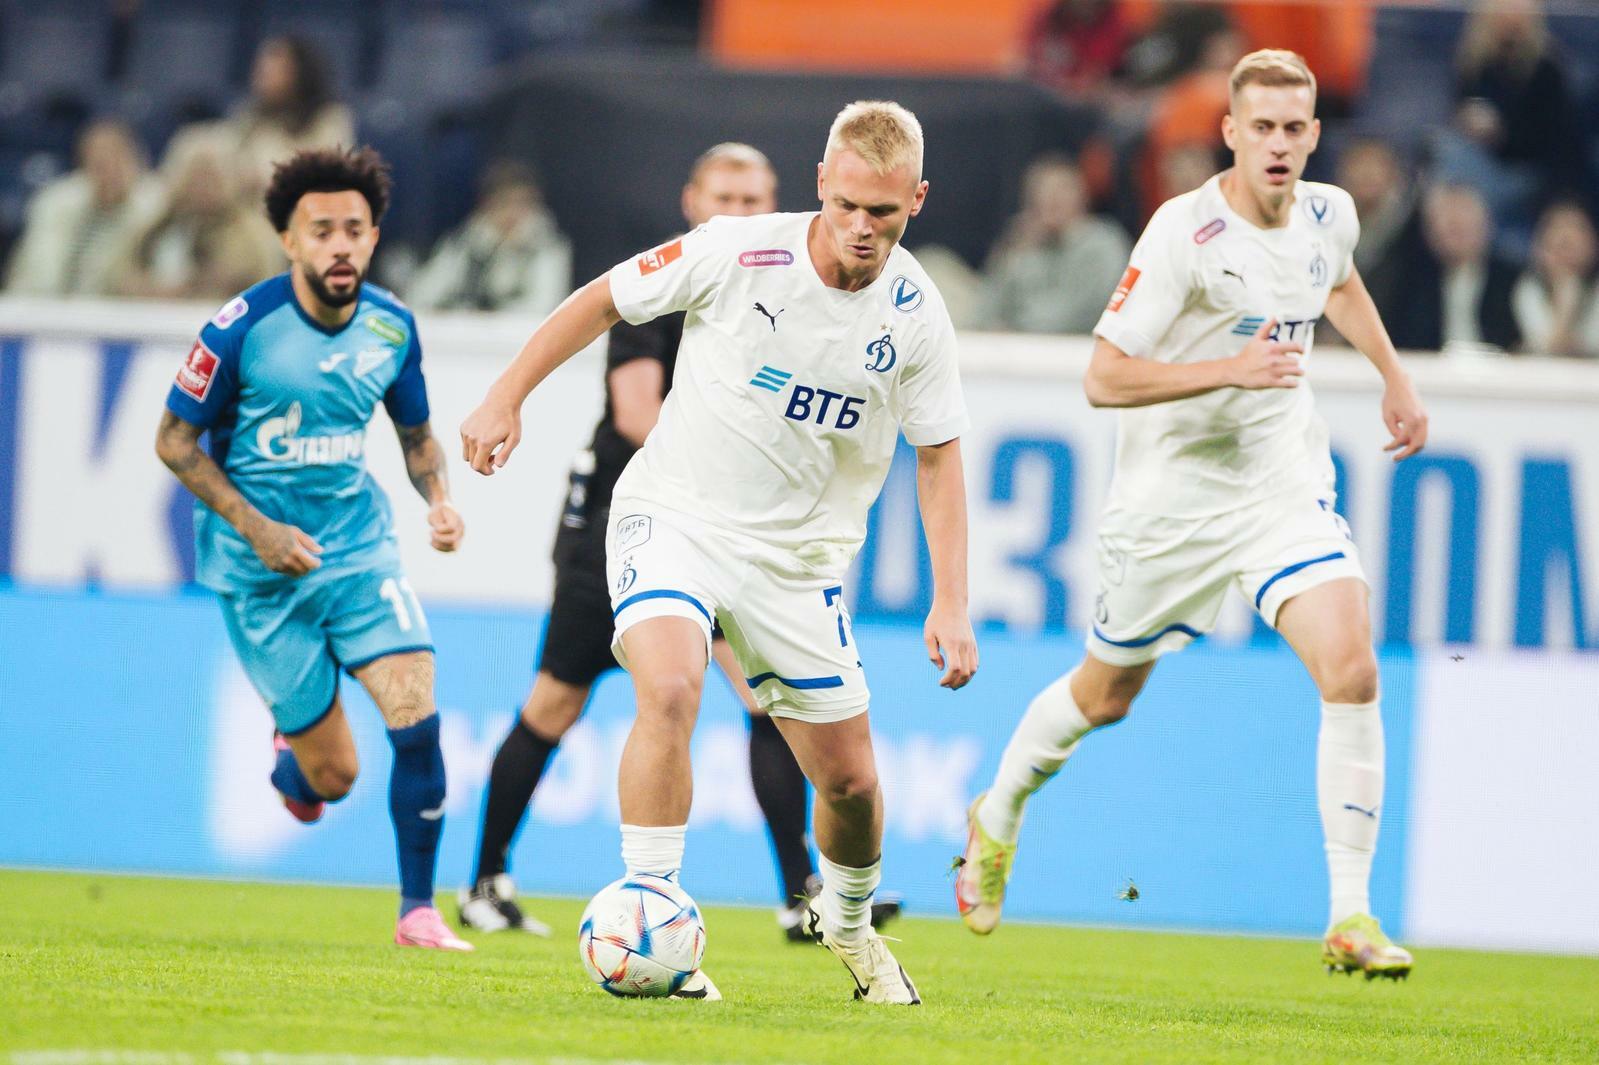 Noticias del FC "Dynamo" Moscú | Konstantin Tyukavin: "Estaré feliz si marco 15 goles al final de la temporada". Sitio oficial del club Dynamo.